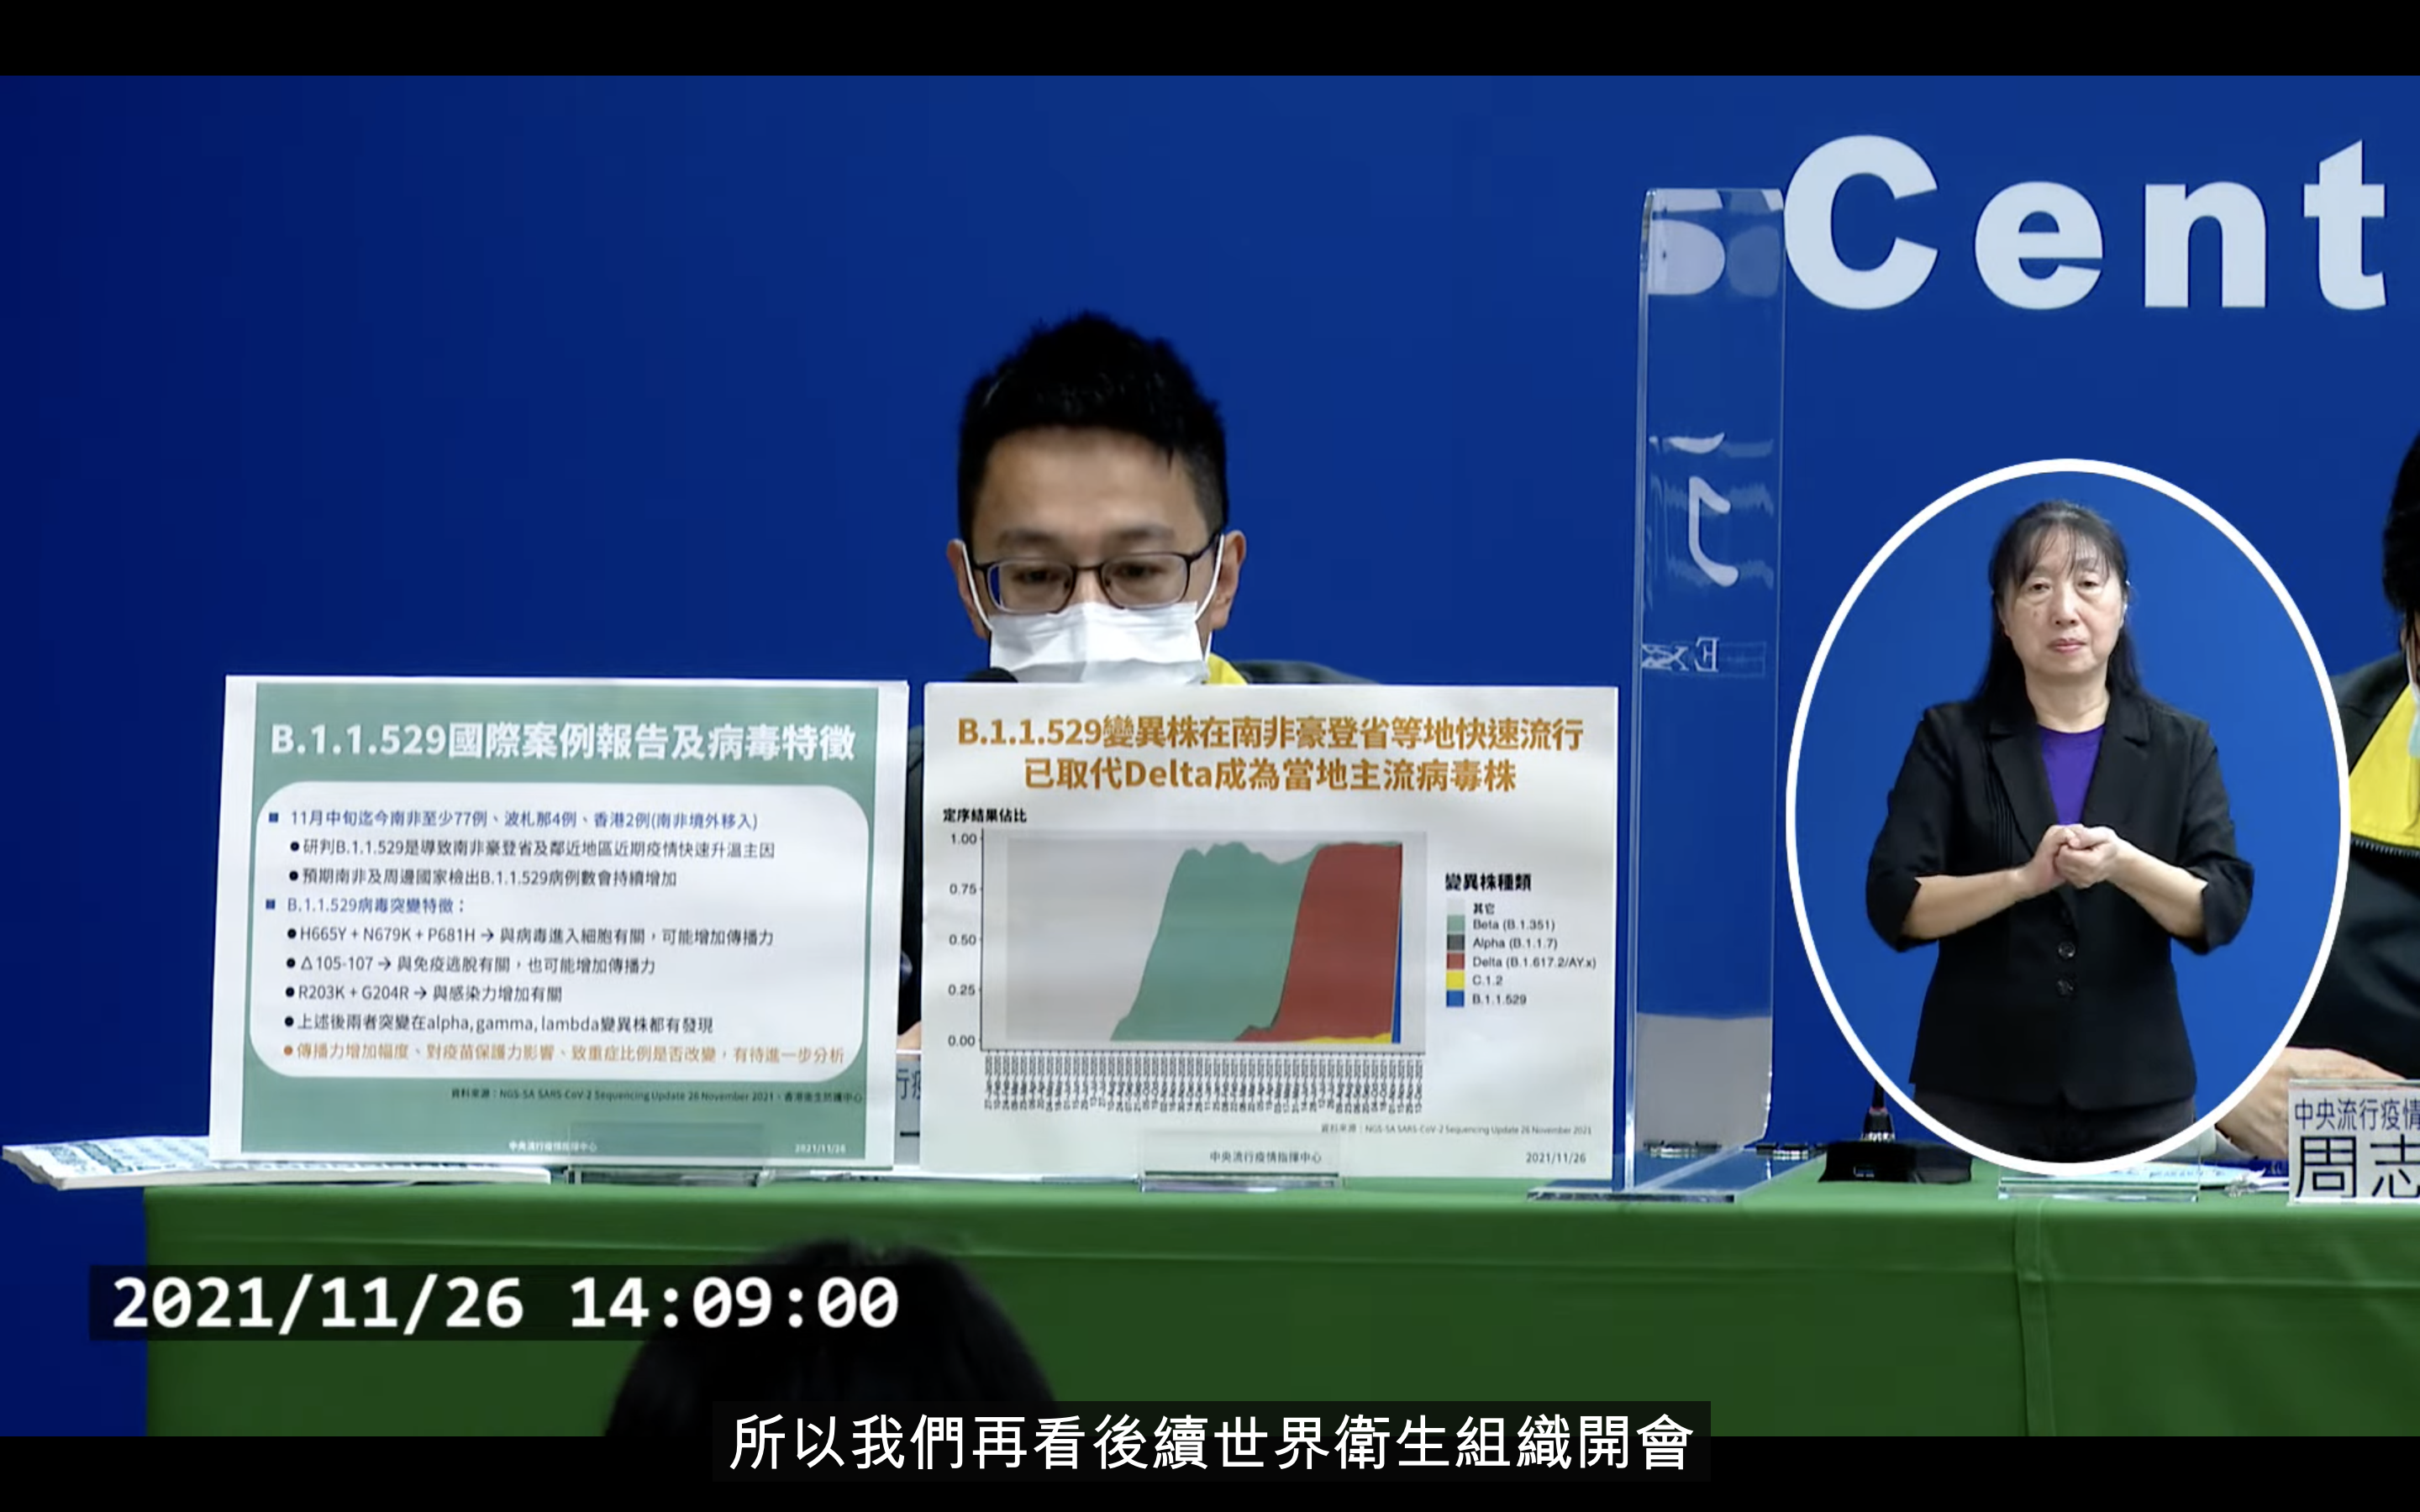 오미크론 변이 바이러스 관련해 타이완 방역 관계자가 설명하는 모습. (타이완 위생복지부 질병관리서 유튜브 채널 갈무리)